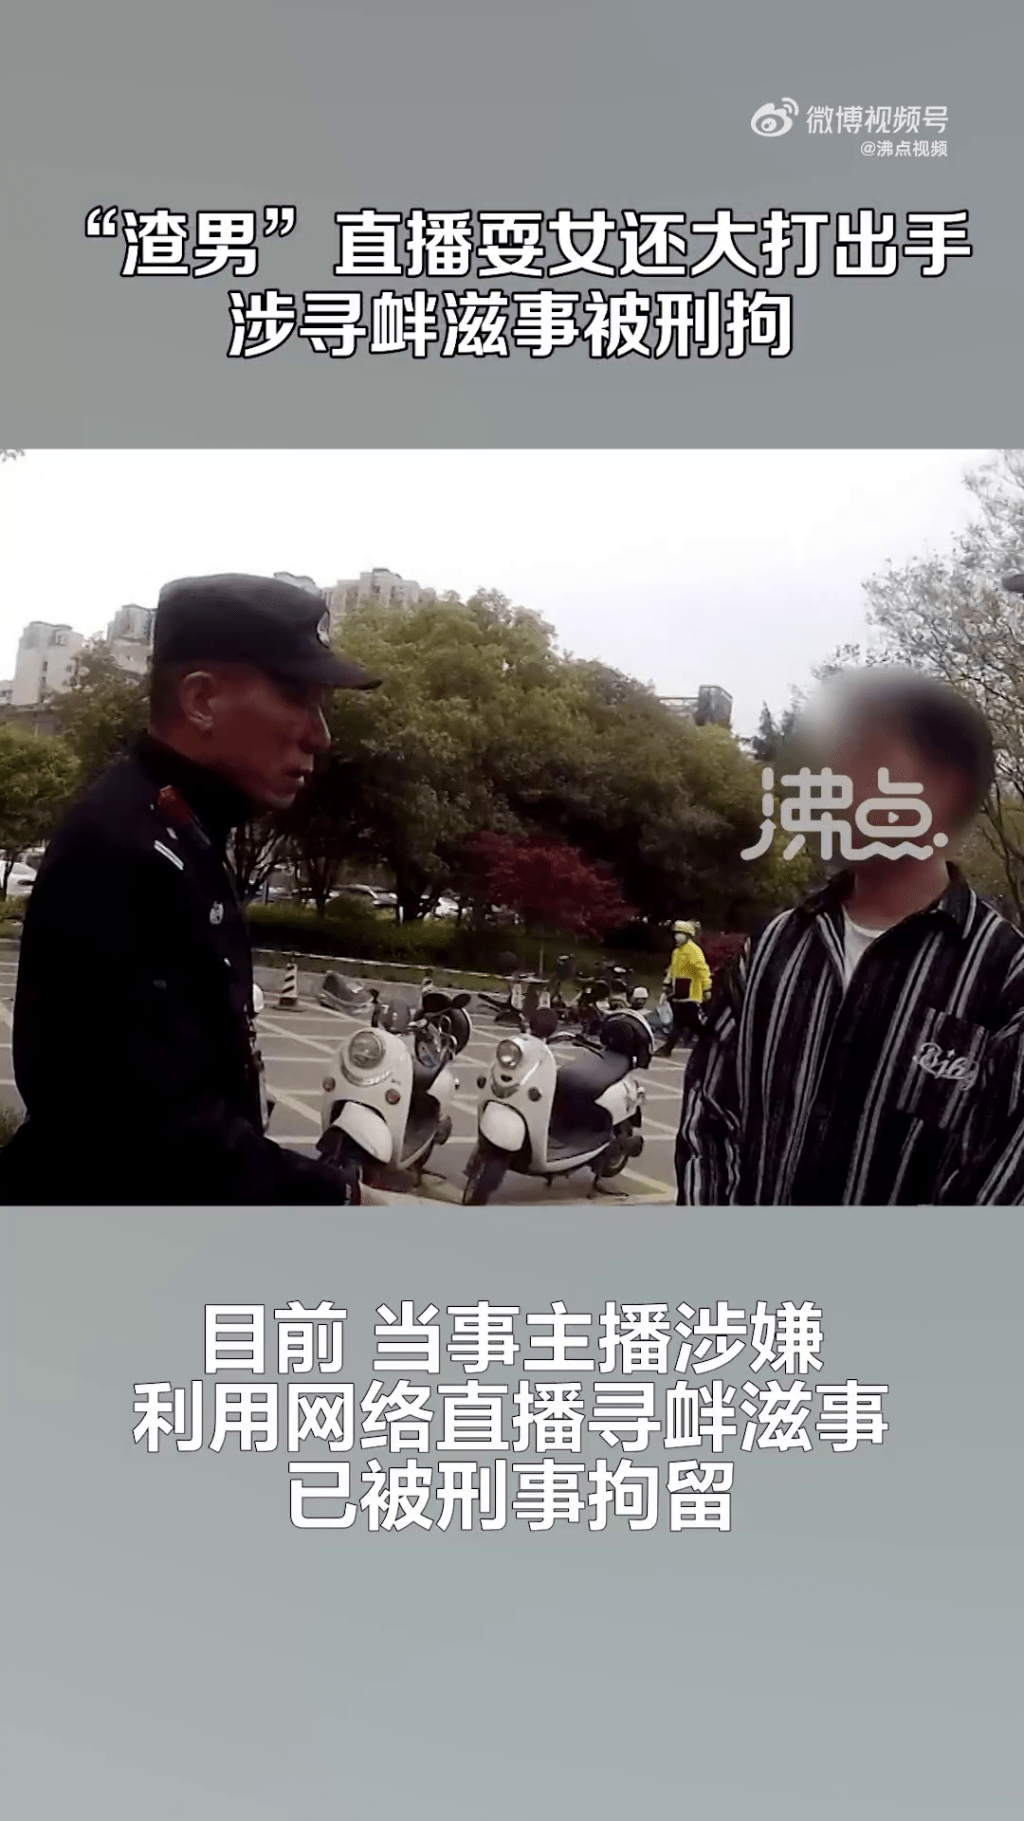 據沸點報道，陳男因「利用信息網絡尋釁滋事」被刑拘。